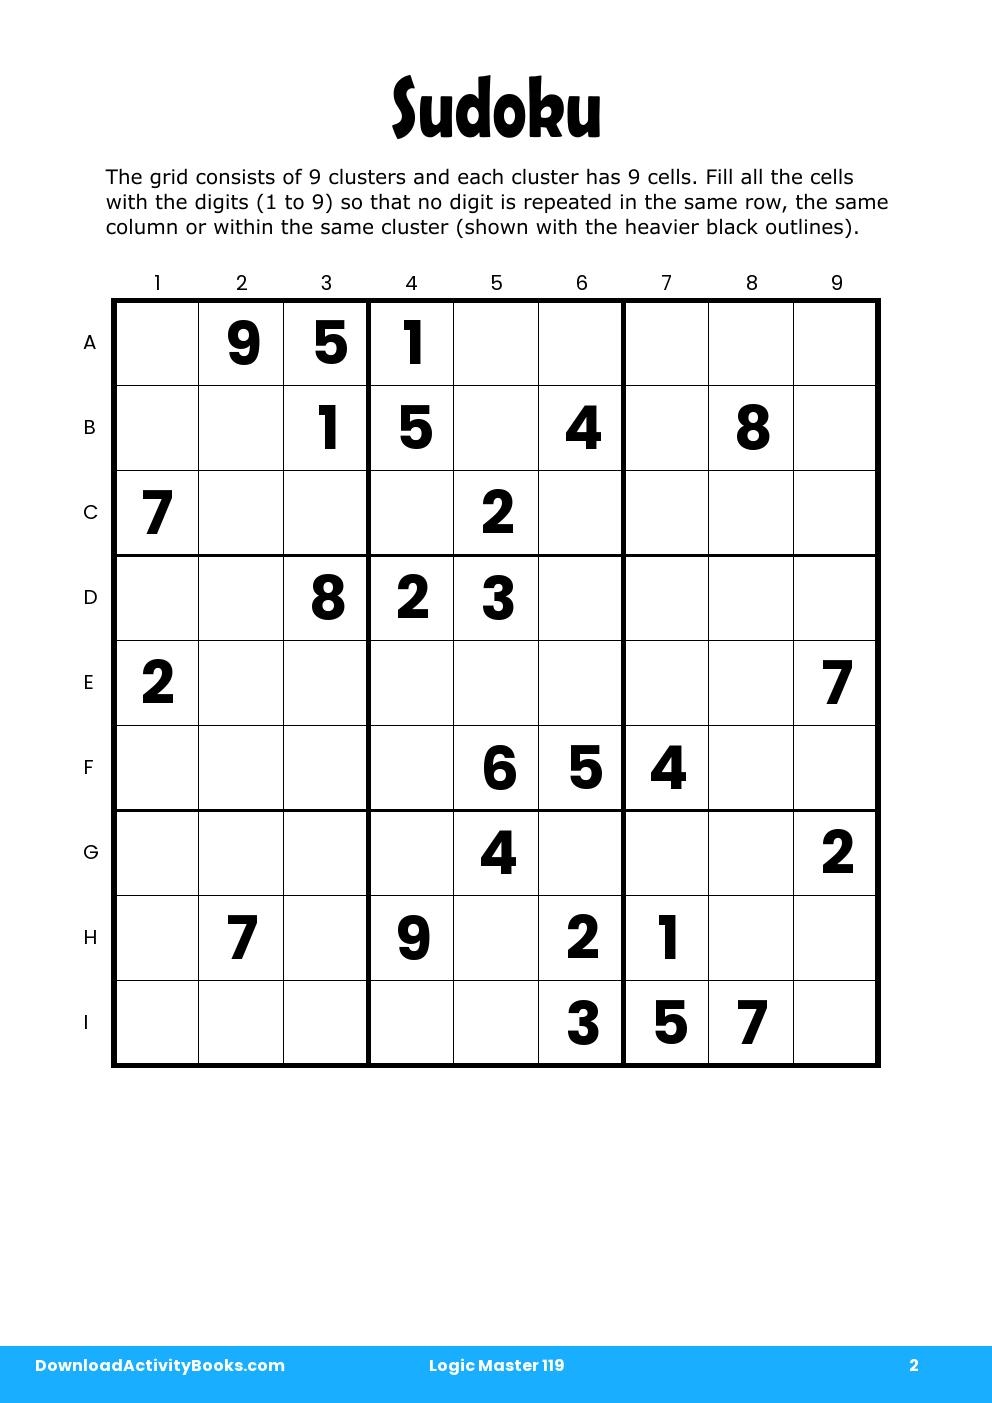 Sudoku in Logic Master 119